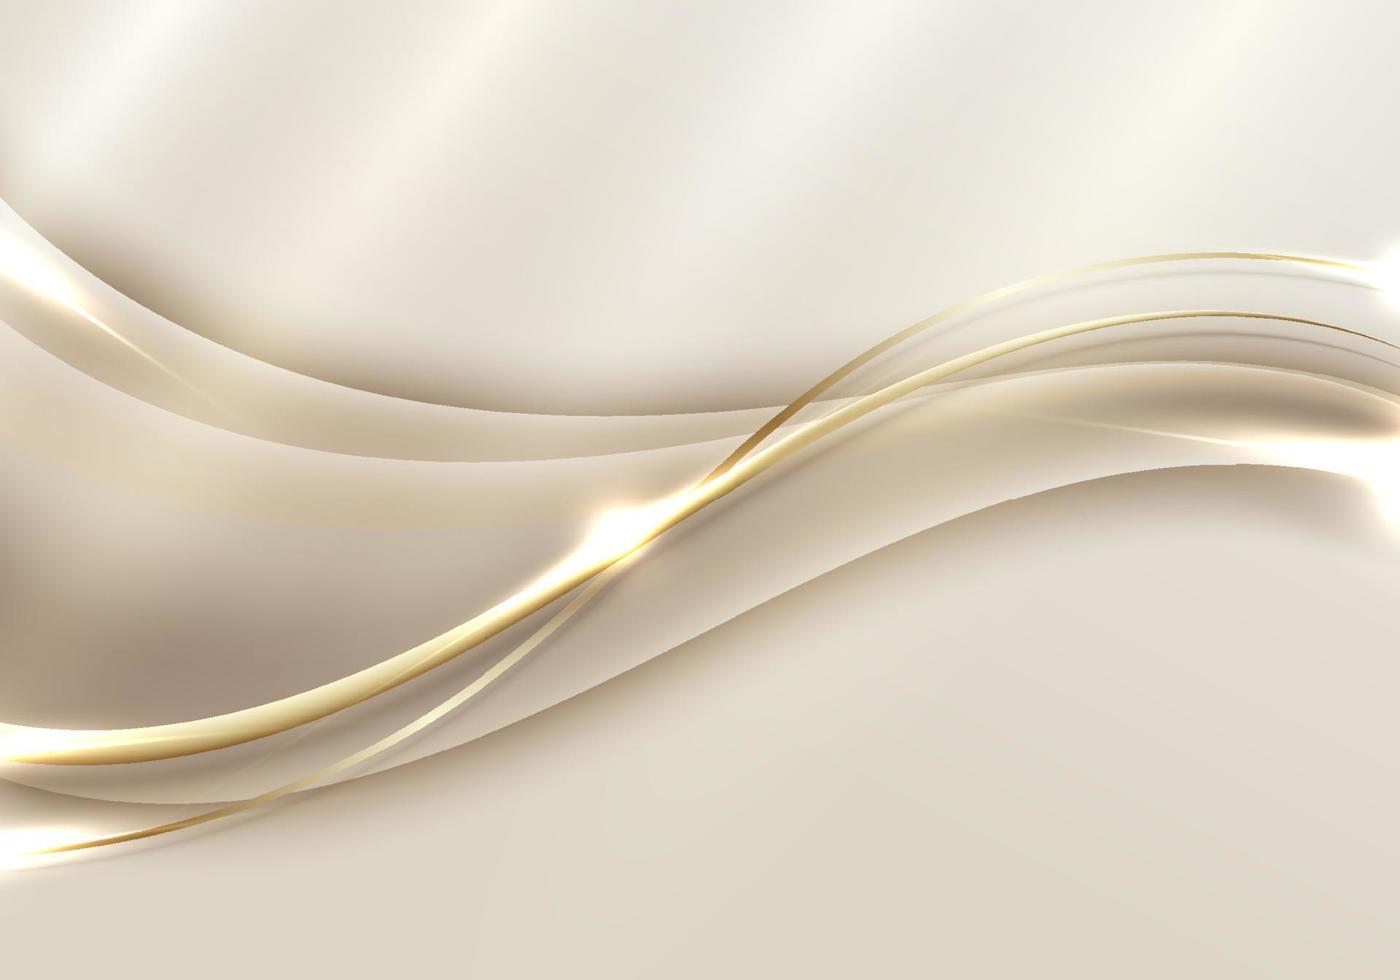 modelo abstrato 3d forma de onda dourada elegante com iluminação brilhante de linha de ouro brilhante no estilo de luxo de fundo dourado vetor